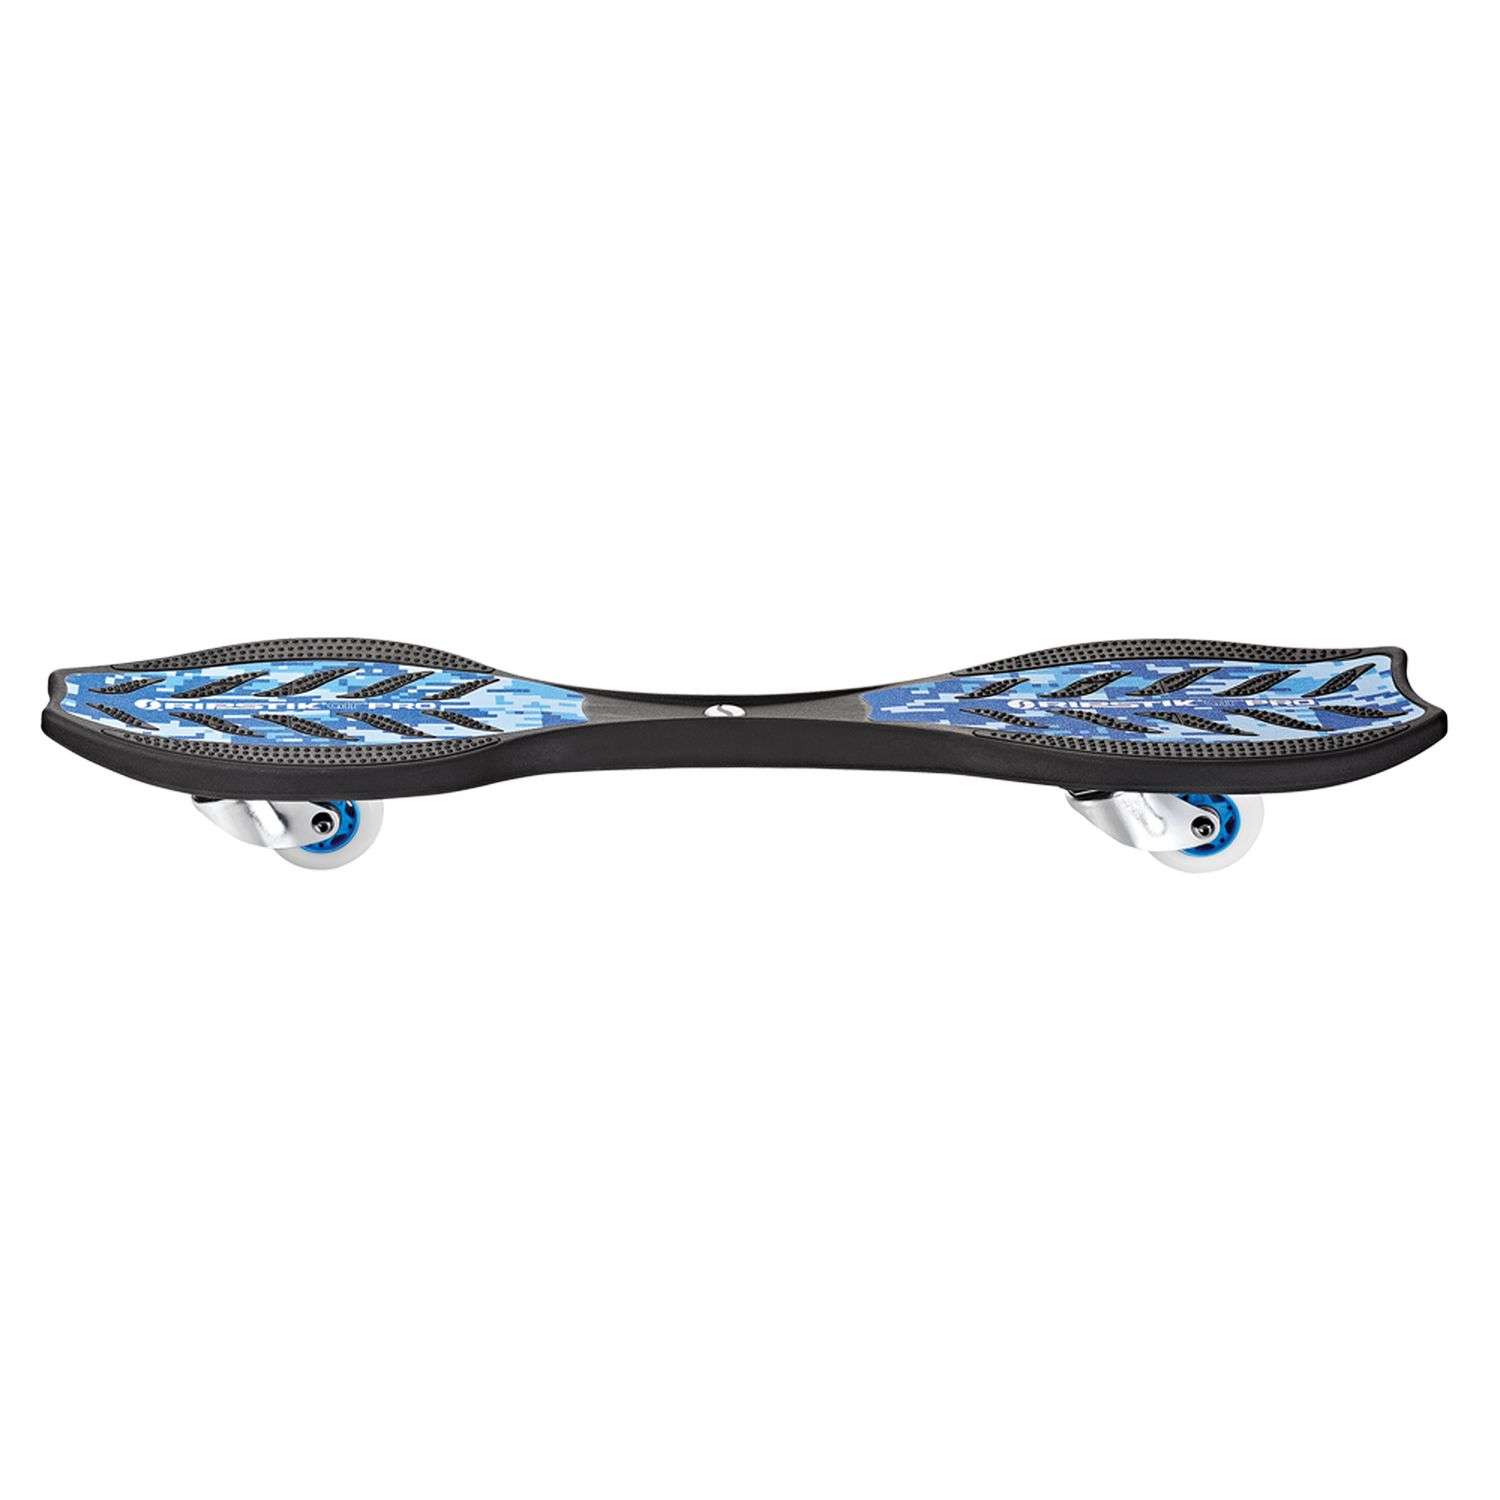 Скейтборд двухколёсный RAZOR RipStik Air Pro Special Edition синий камуфляж - рипстик роллерсёрф на двух колёсах - фото 2